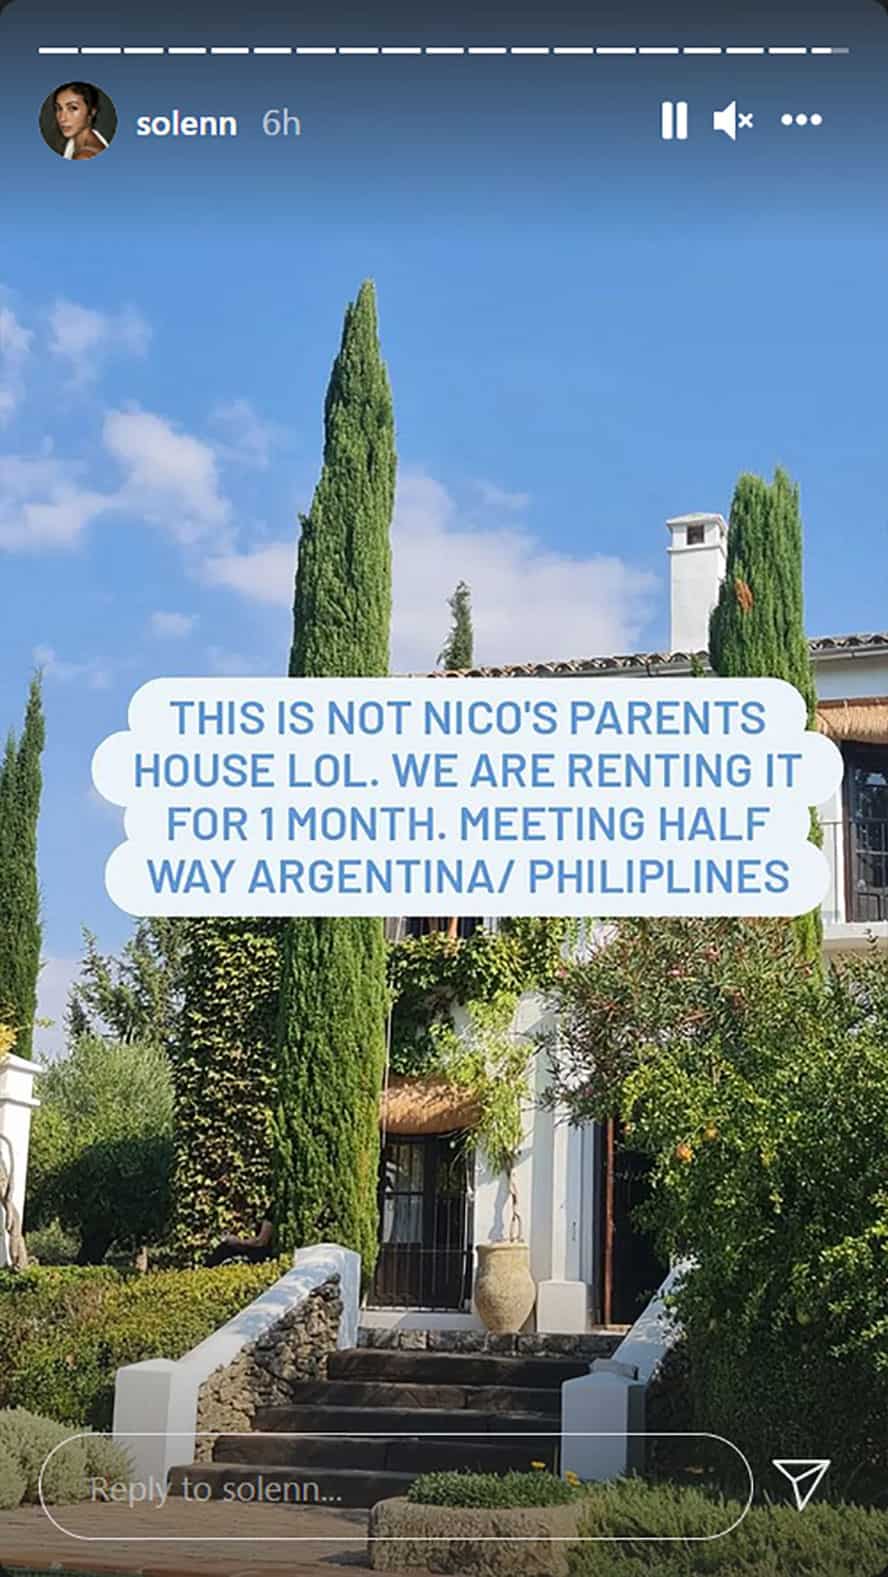 Solenn Heussaff, natawa nang napagkamalang bahay ni Nico ang bonggang vacay house sa Spain: “We’re renting it”